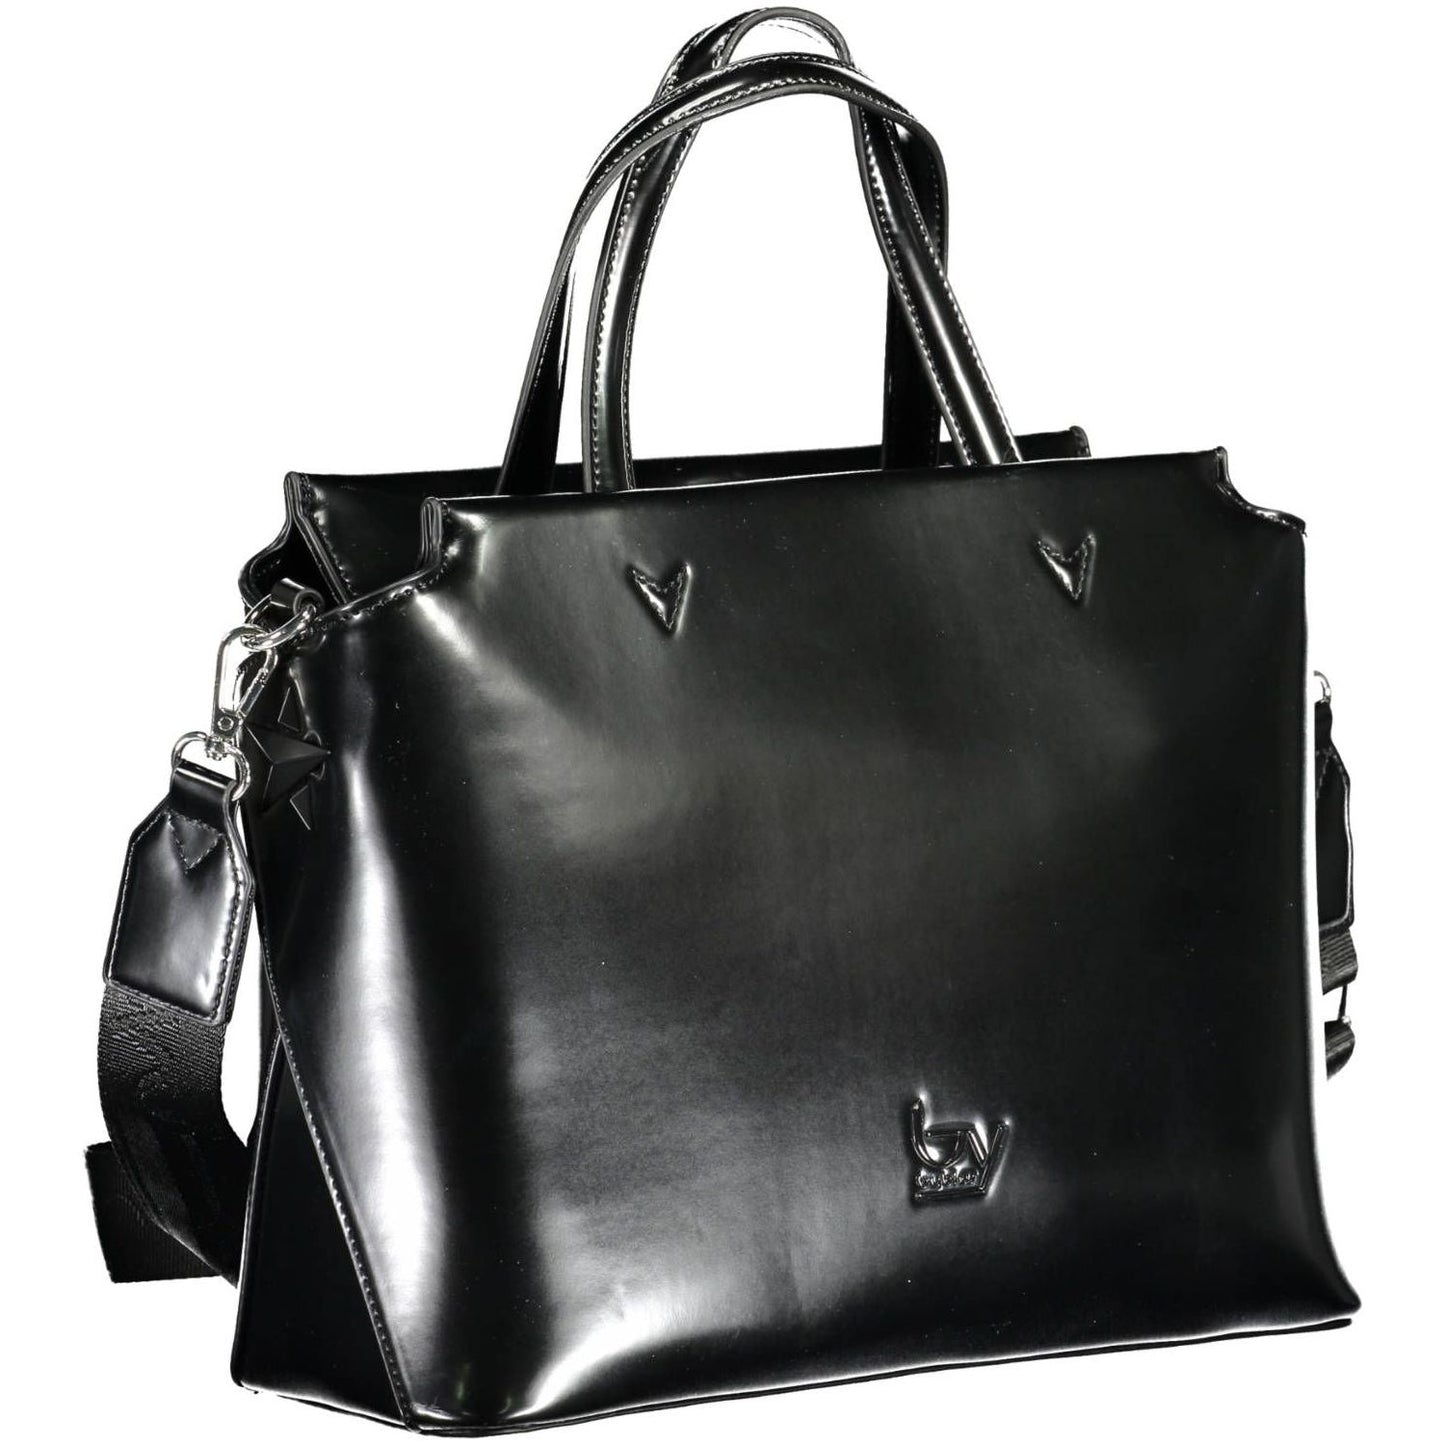 BYBLOS Elegant Black Two-Handle Bag with Contrasting Details elegant-black-two-handle-bag-with-contrasting-details